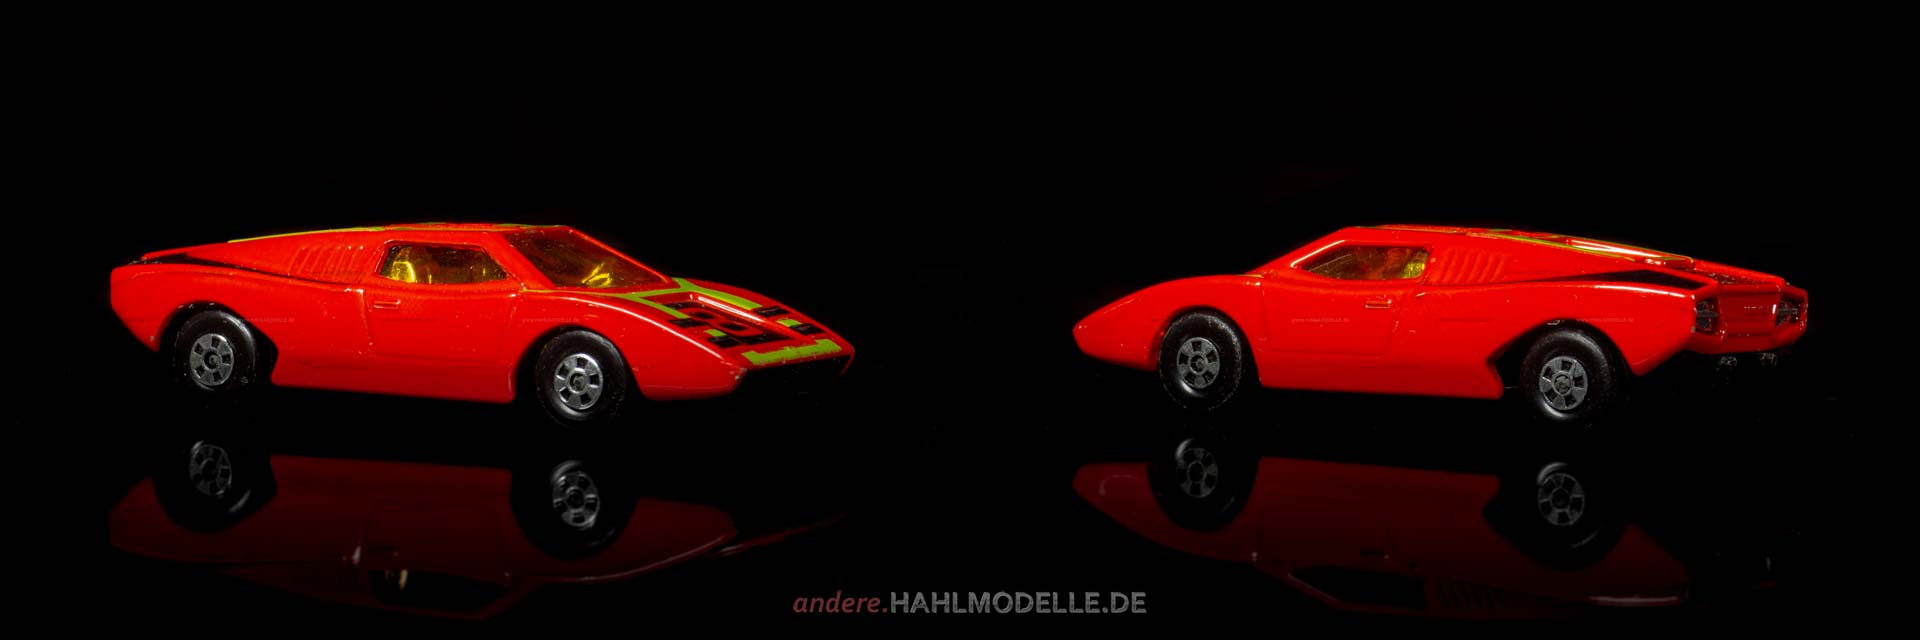 Lamborghini Countach | Coupé | Lesney Products & Co. Ltd. | Matchbox Superfast Streakers | www.andere.hahlmodelle.de